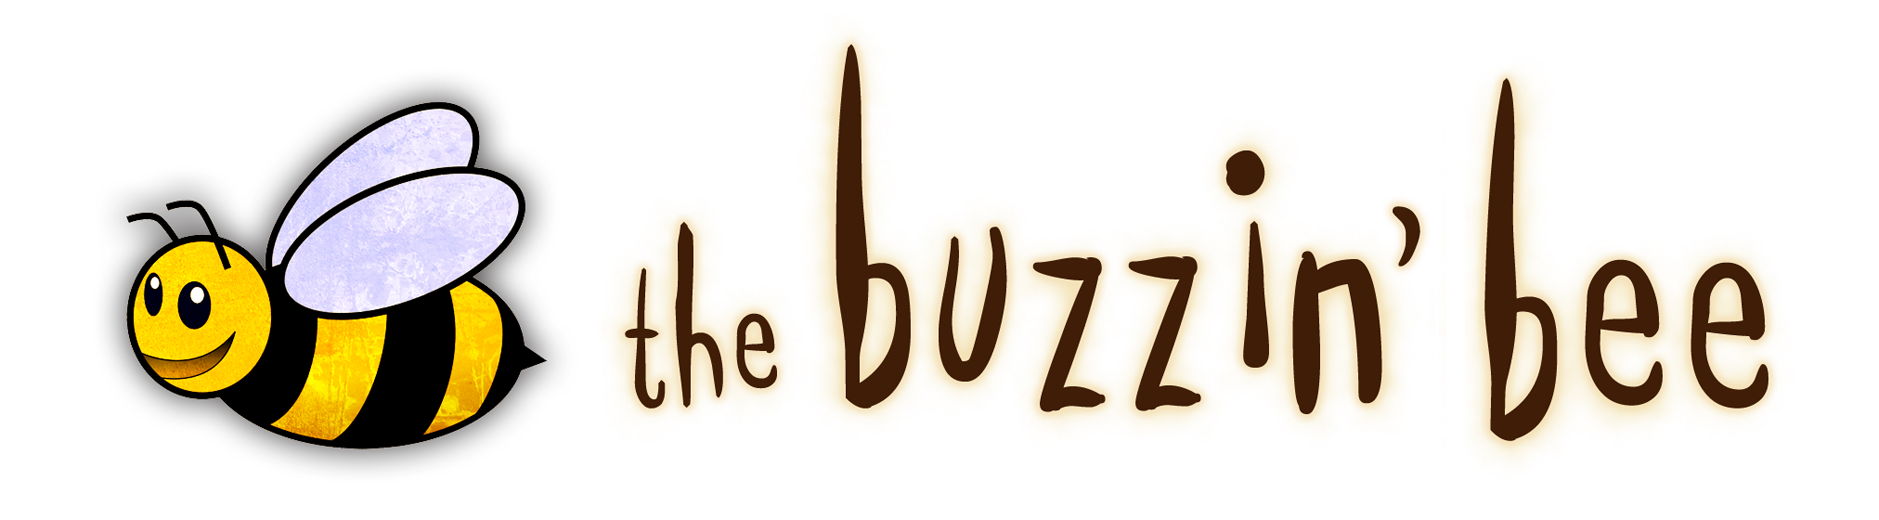 The Buzzin' Bee